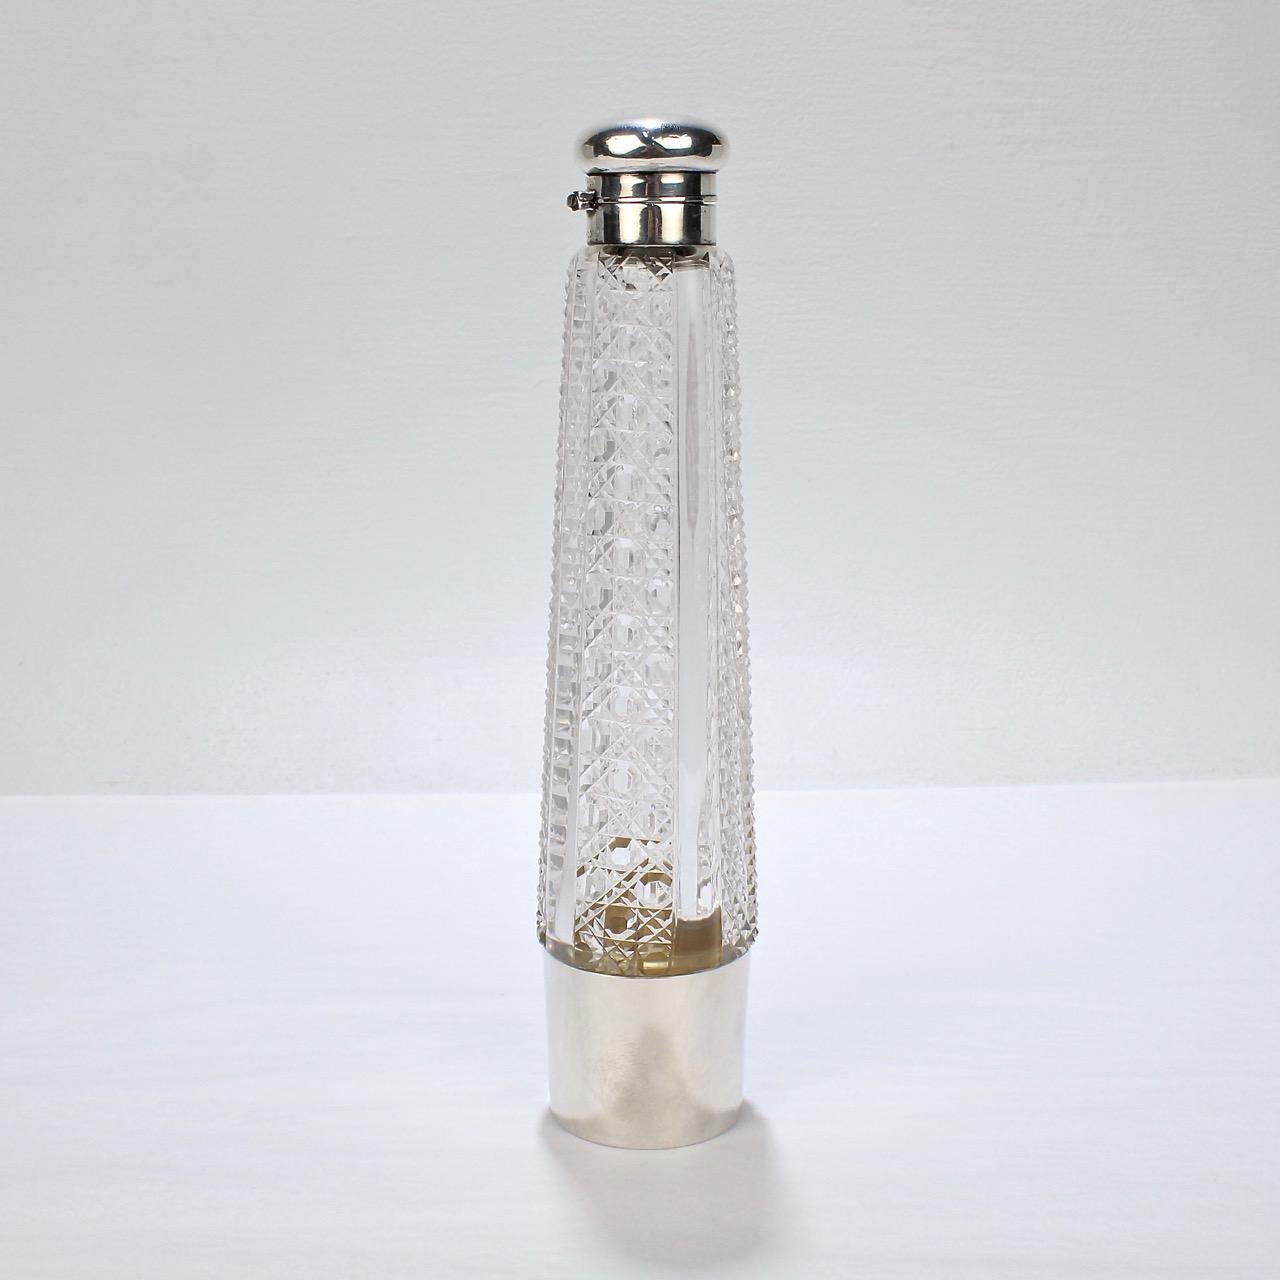 Eine wunderbare Art Deco Zeit Deutsch massivem Silber und geschliffenem Kristall Likör Flasche.

Mit einem abnehmbaren silbernen Becher, der auf den Sockel passt, einer silbernen Kappe mit Drehverschluss und einer Dekoration aus geschliffenen